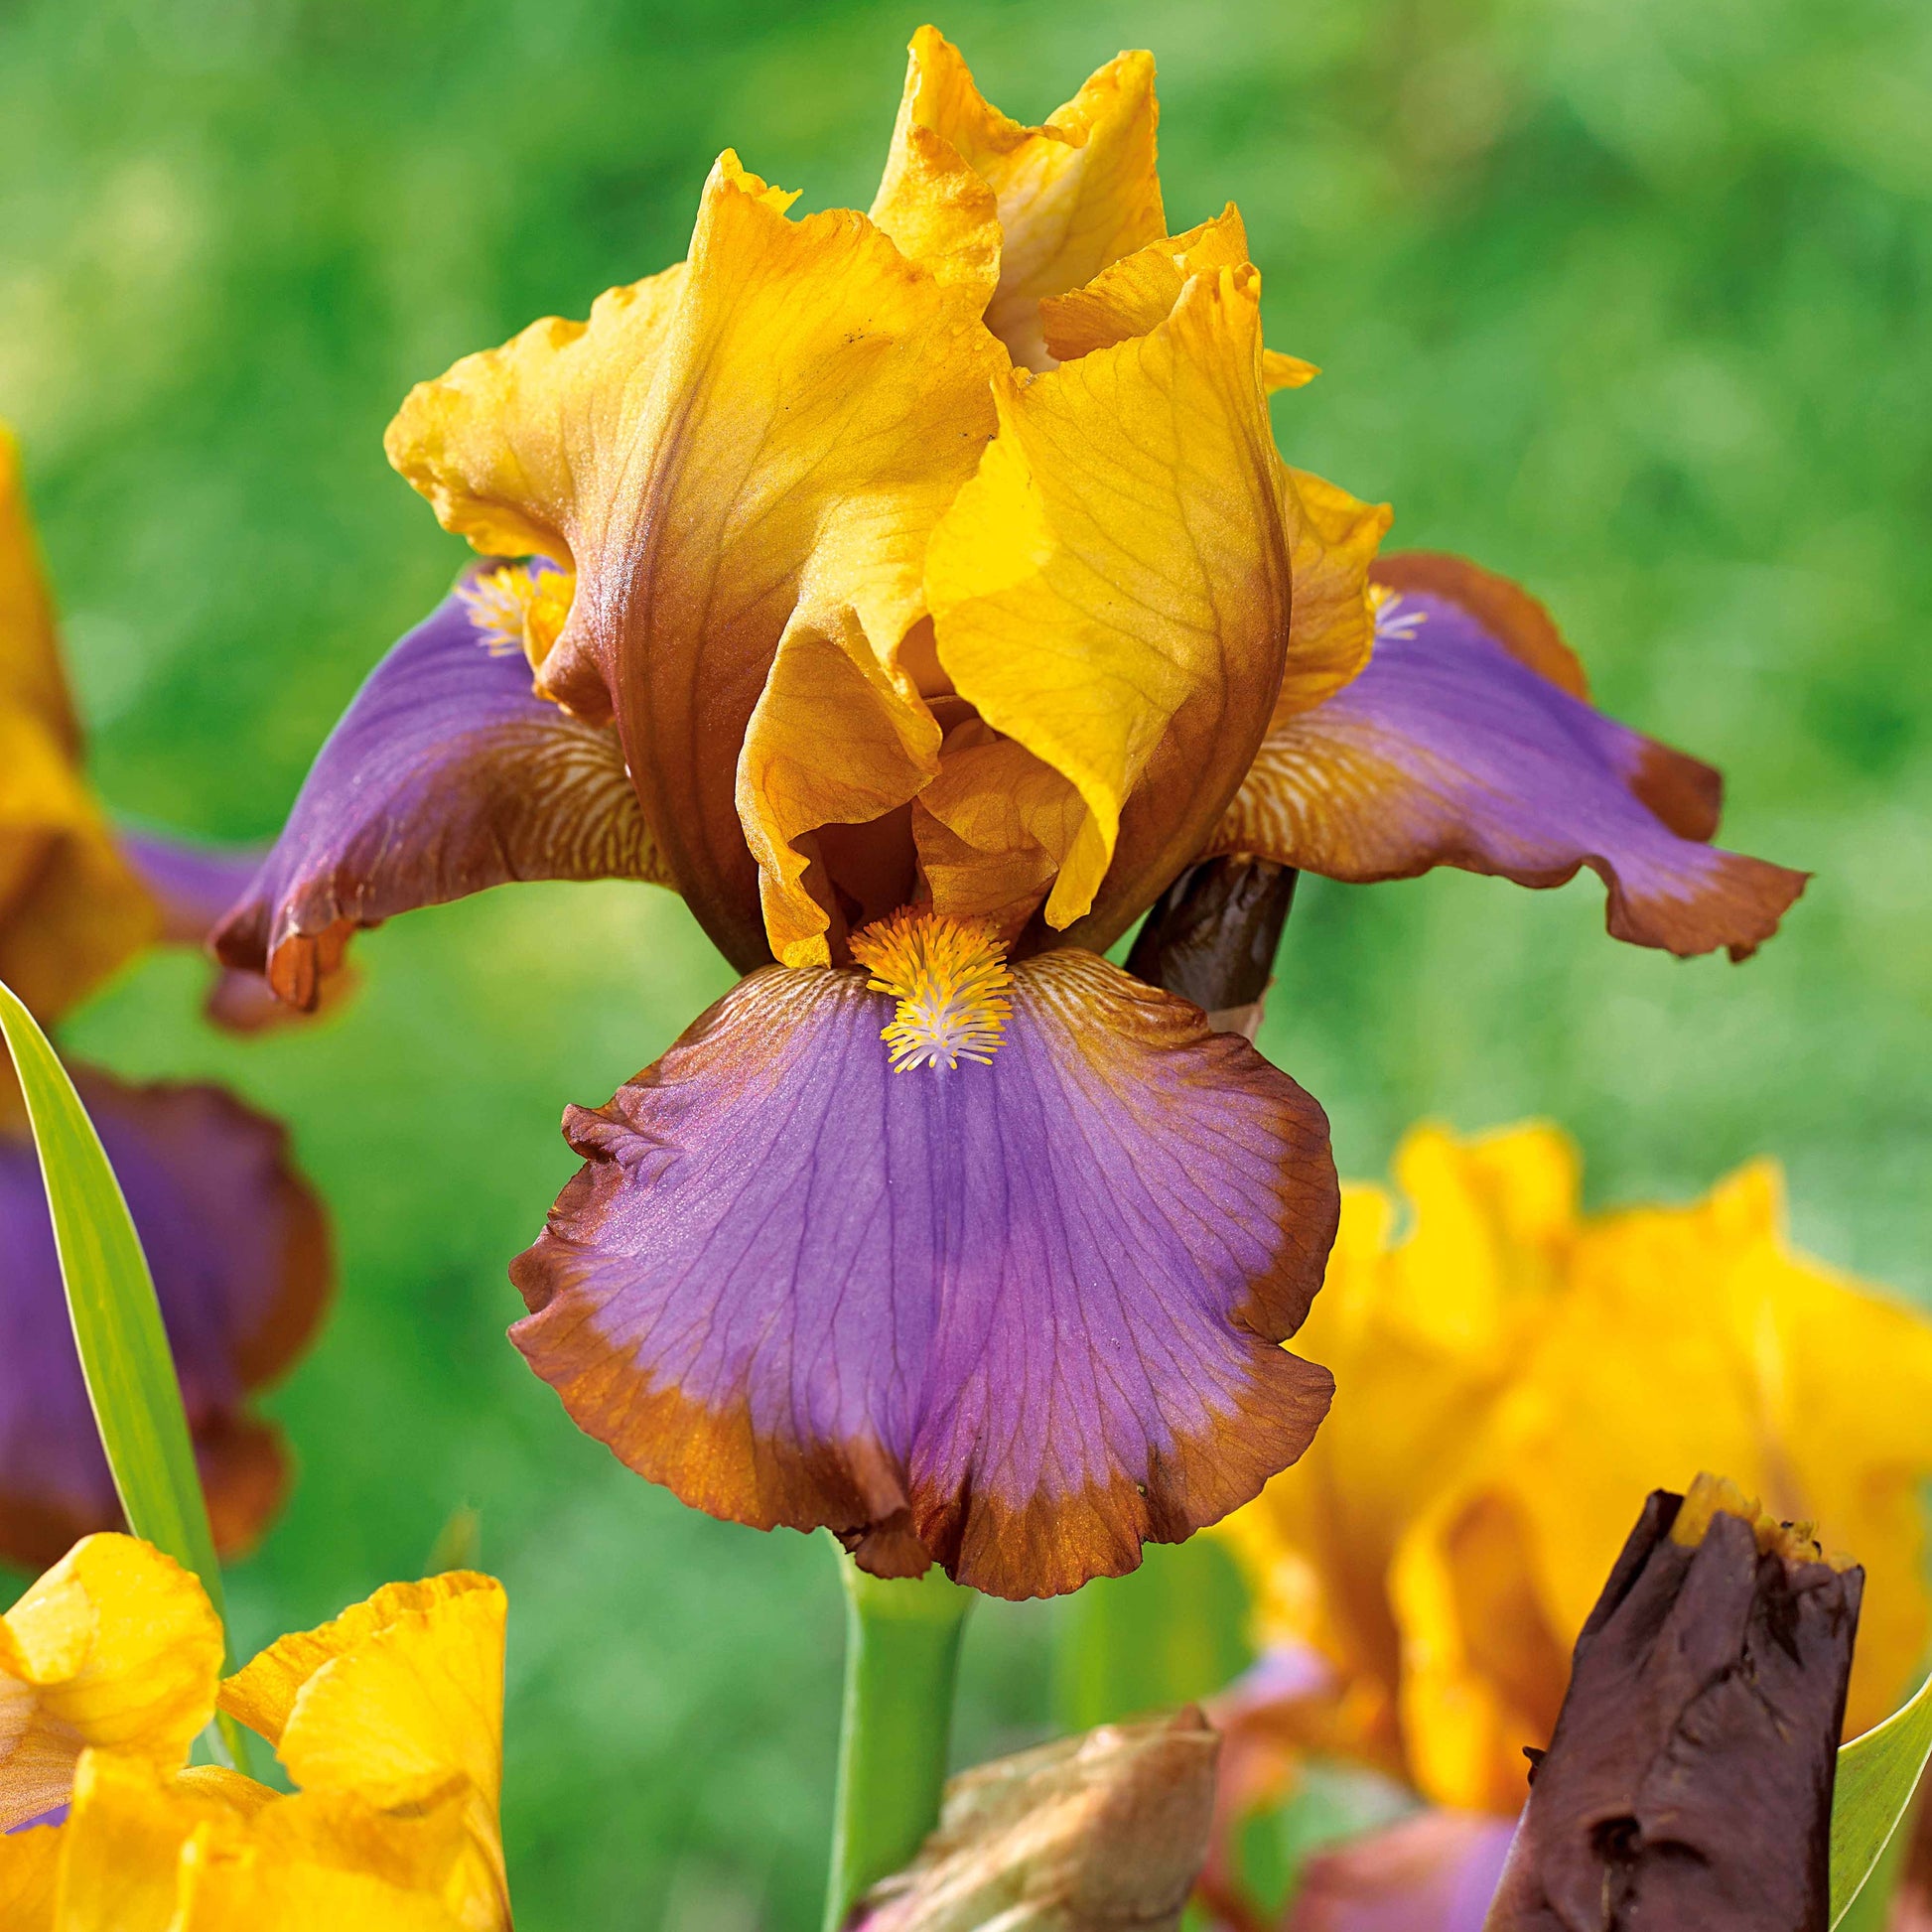 Sammlung von Garten-Iris: Lasso, Bordure, Sangreal. - Iris germanica  (2 lasso, 2 bordure, 2 sangreal) - Pflanzenarten